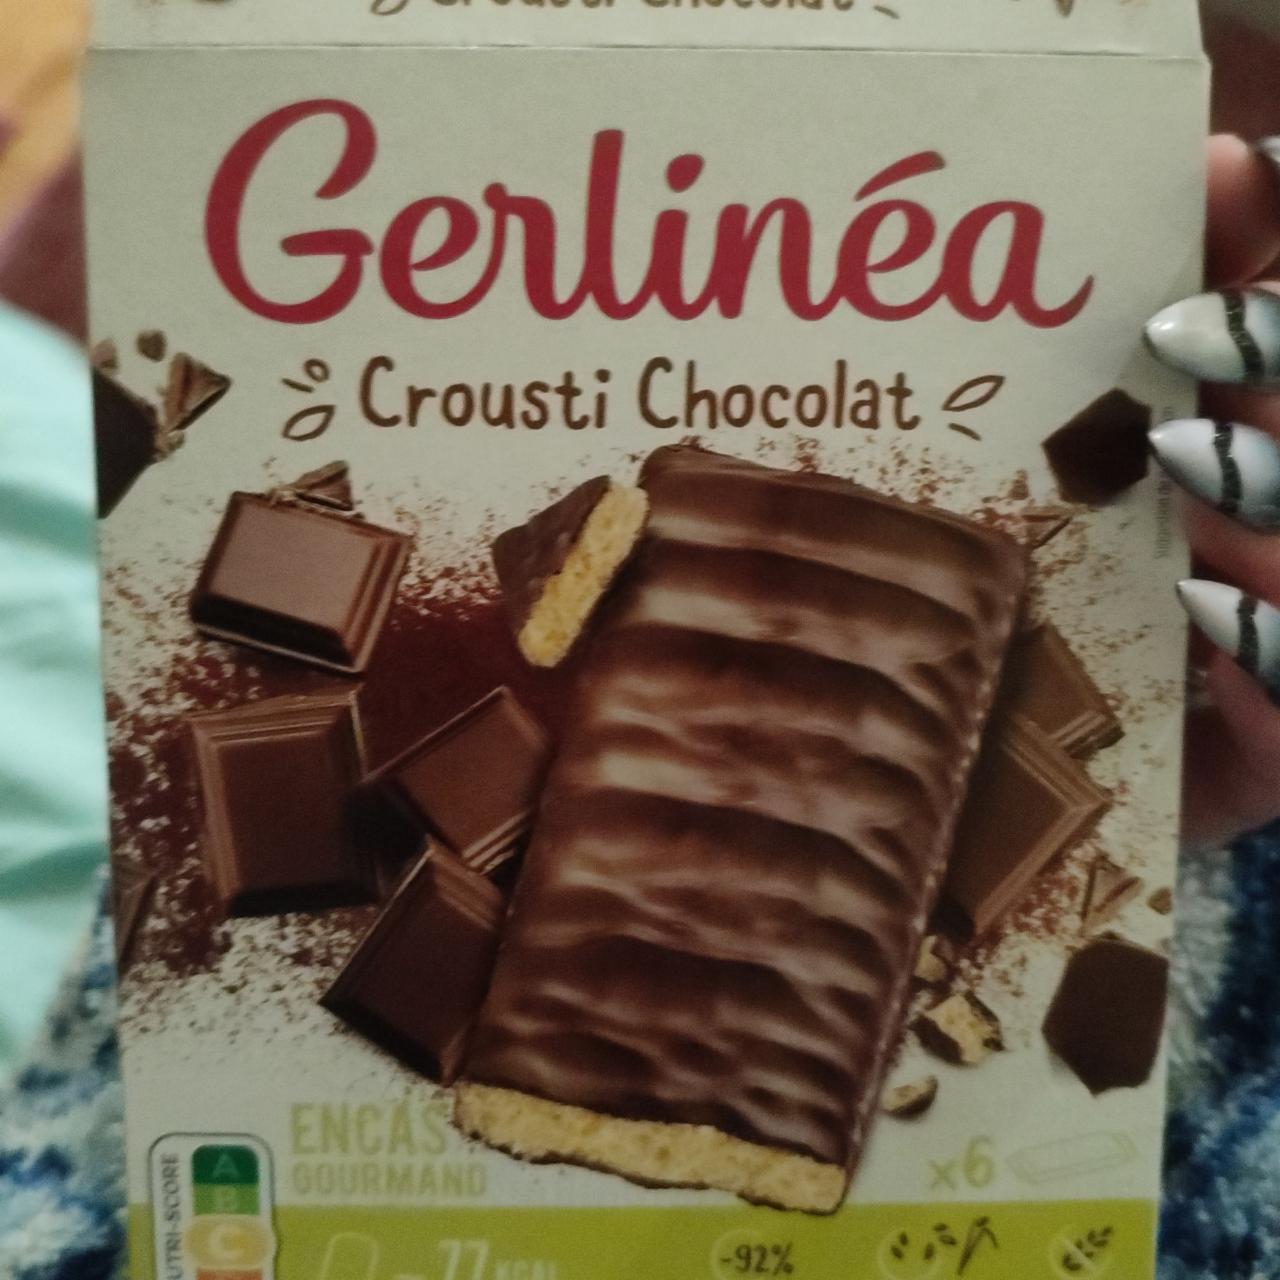 Фото - Батончики диетические Crousti Chocolat Gerlinéa